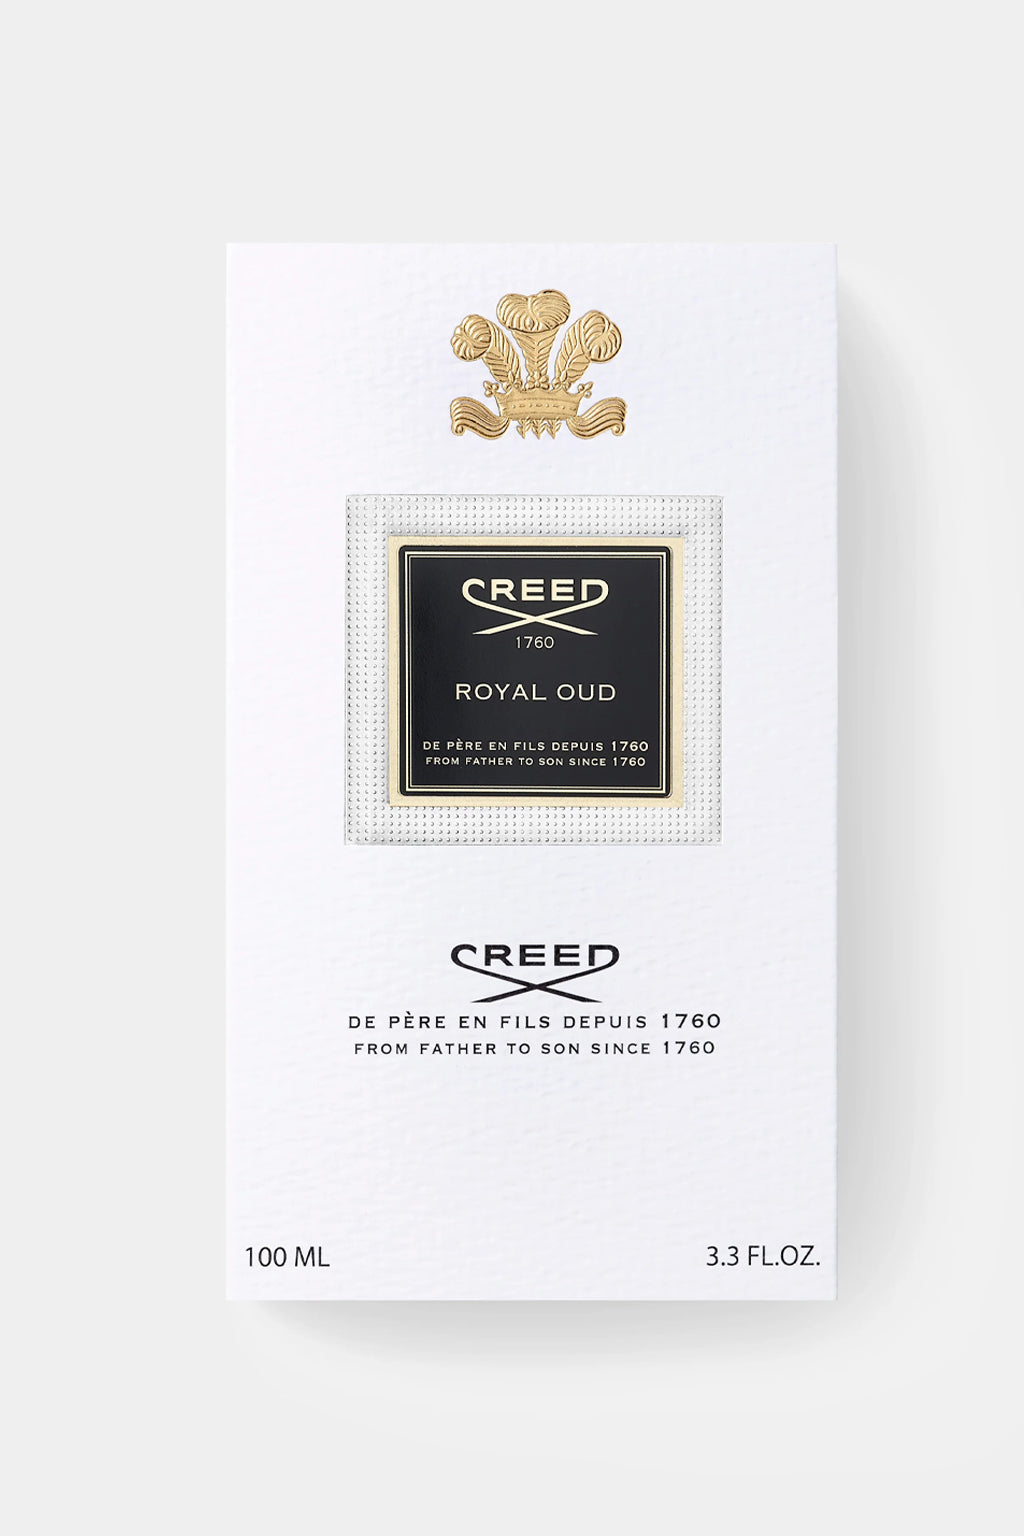 Creed - Royal Oud